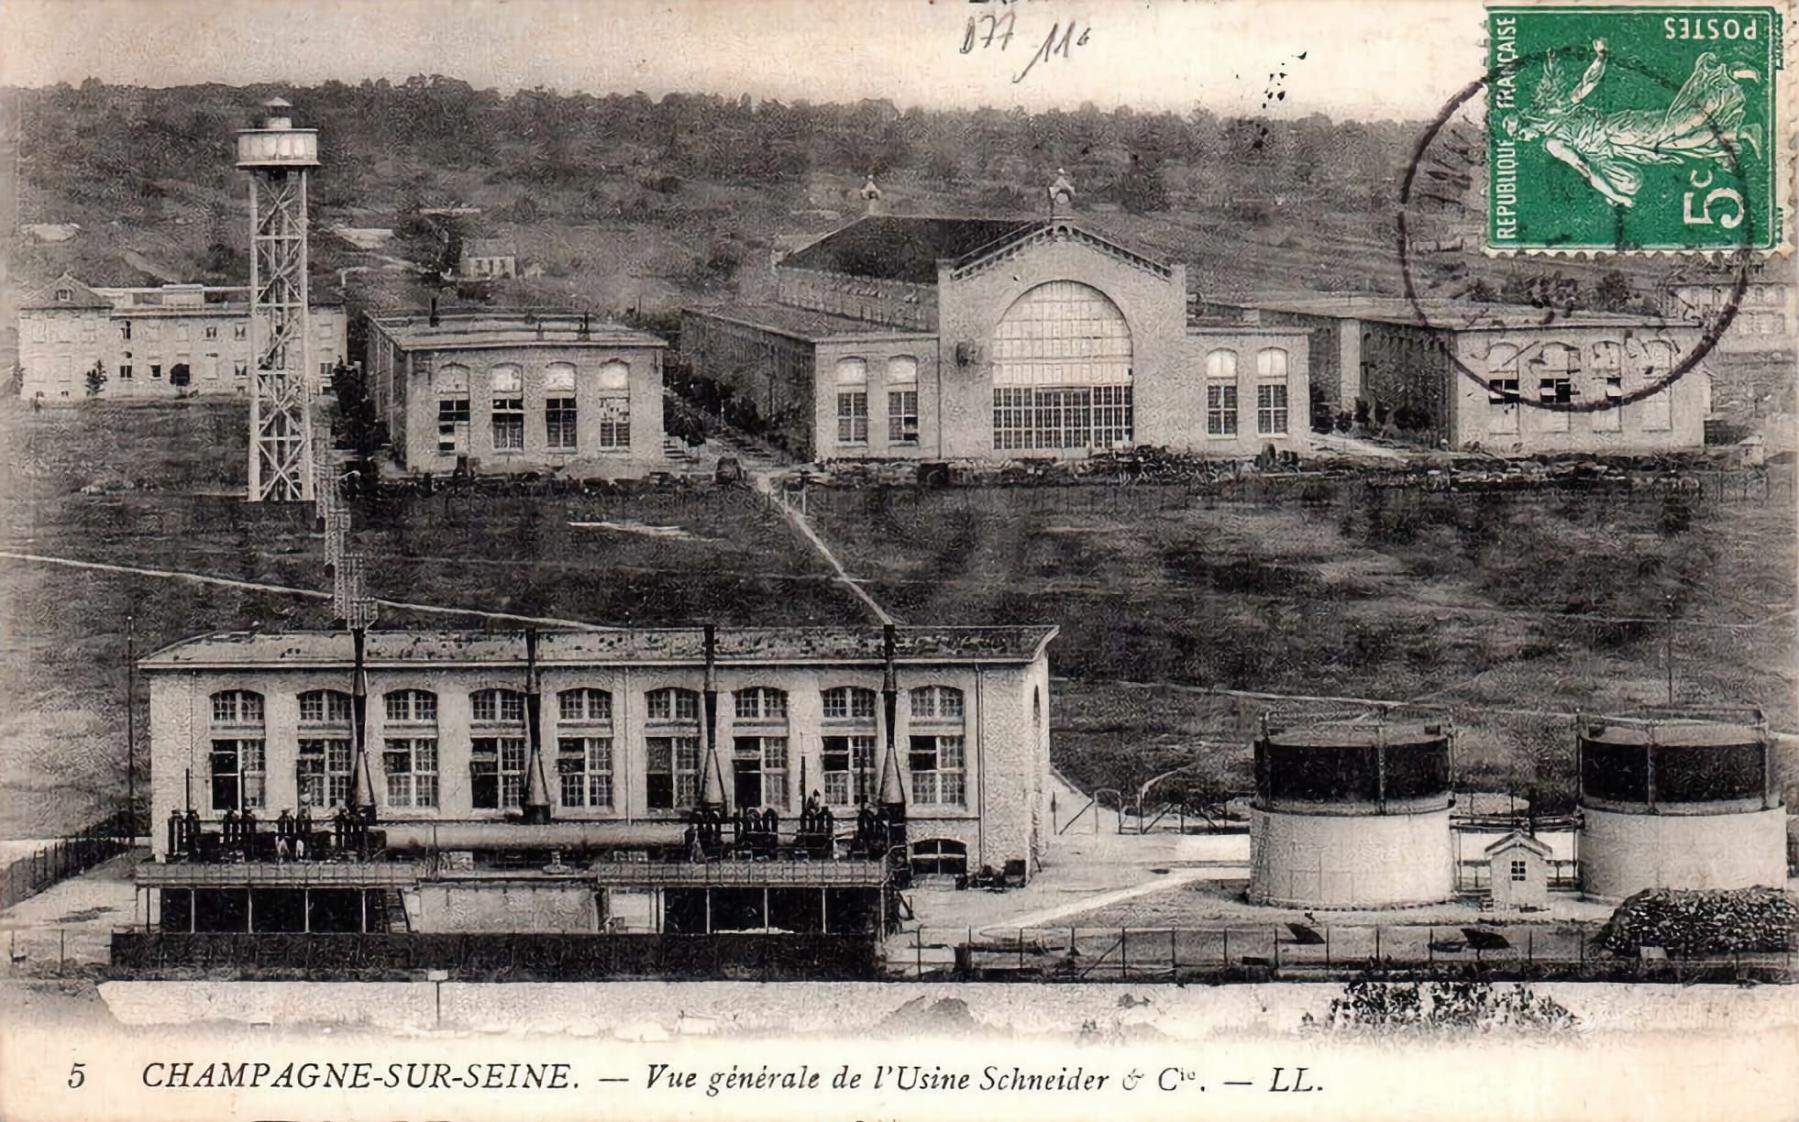 Ligne Maginot - SCHNEIDER-WESTINGHOUSE (SW) - Le Matériel électrique SW - Schneider-Westinghouse 
Les usines de Champagne sur Seine ou ont été produits les matériels SW équipant la ligne Maginot. 

Carte postale éditée alors que les usines appartenaient encore à Schneider et Cie (env 1900)